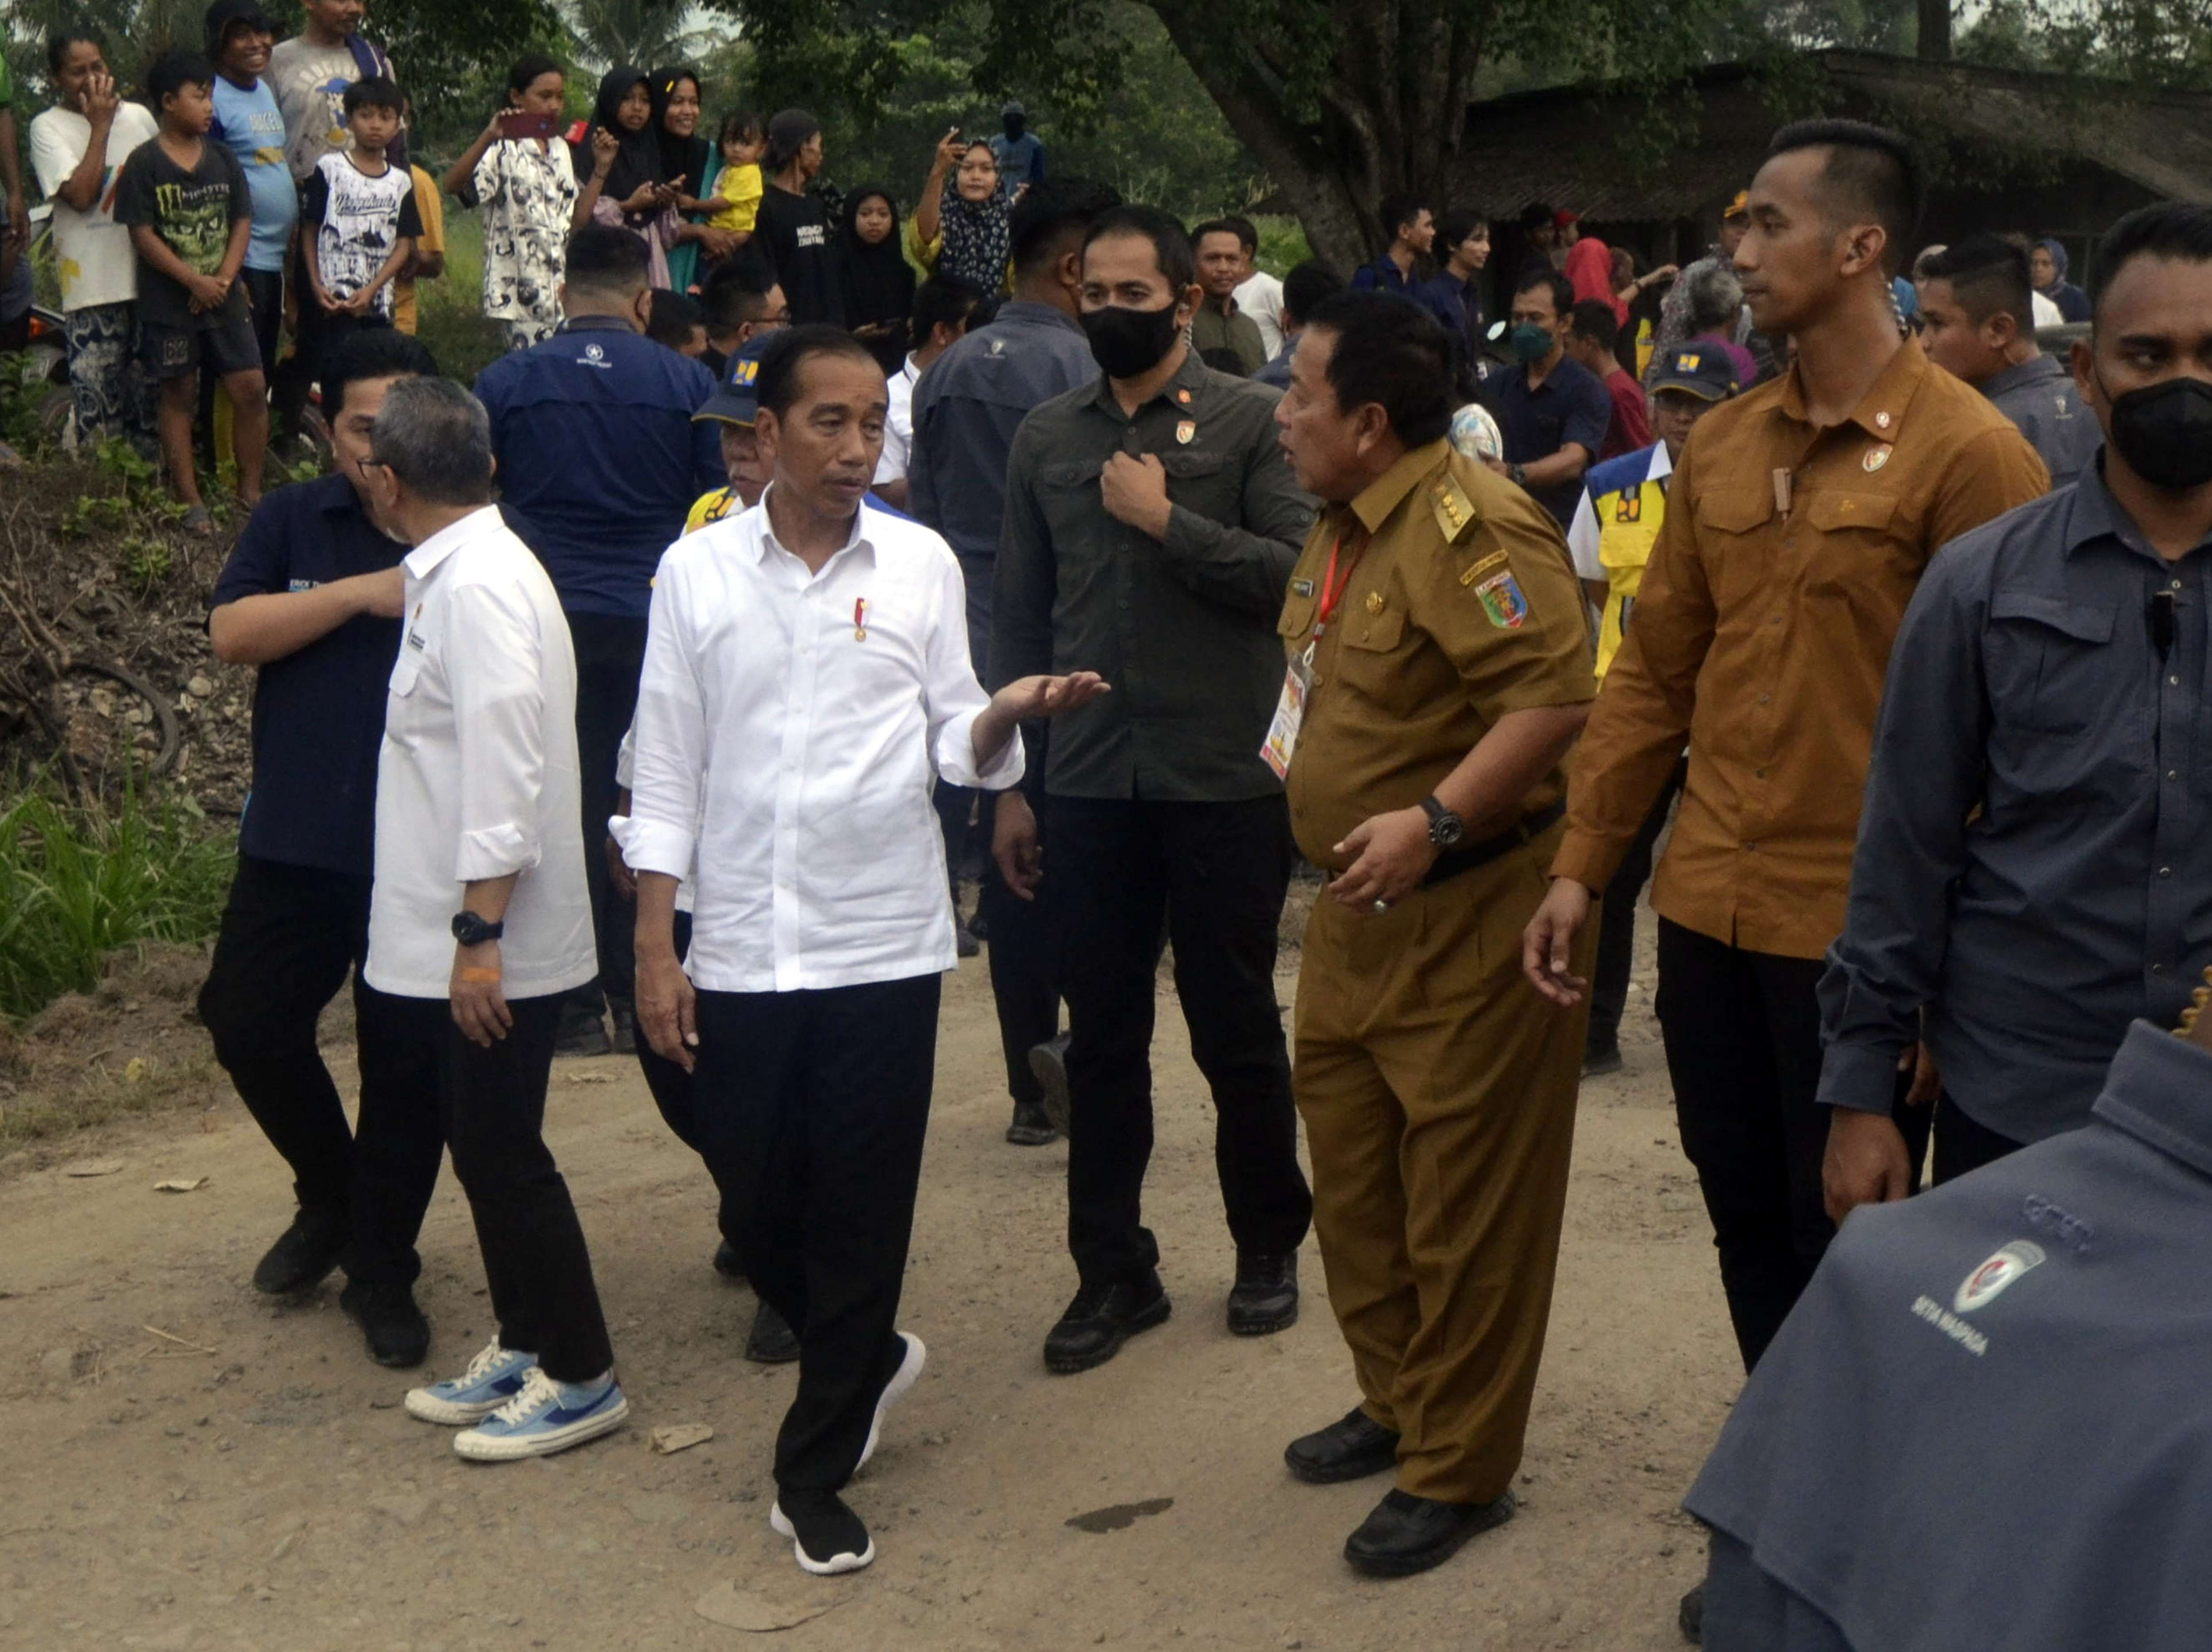 Jokowi Kucurkan Rp 800 Miliar untuk Perbaikan Jalan Lampung, Gubernur Tepuk Tangan